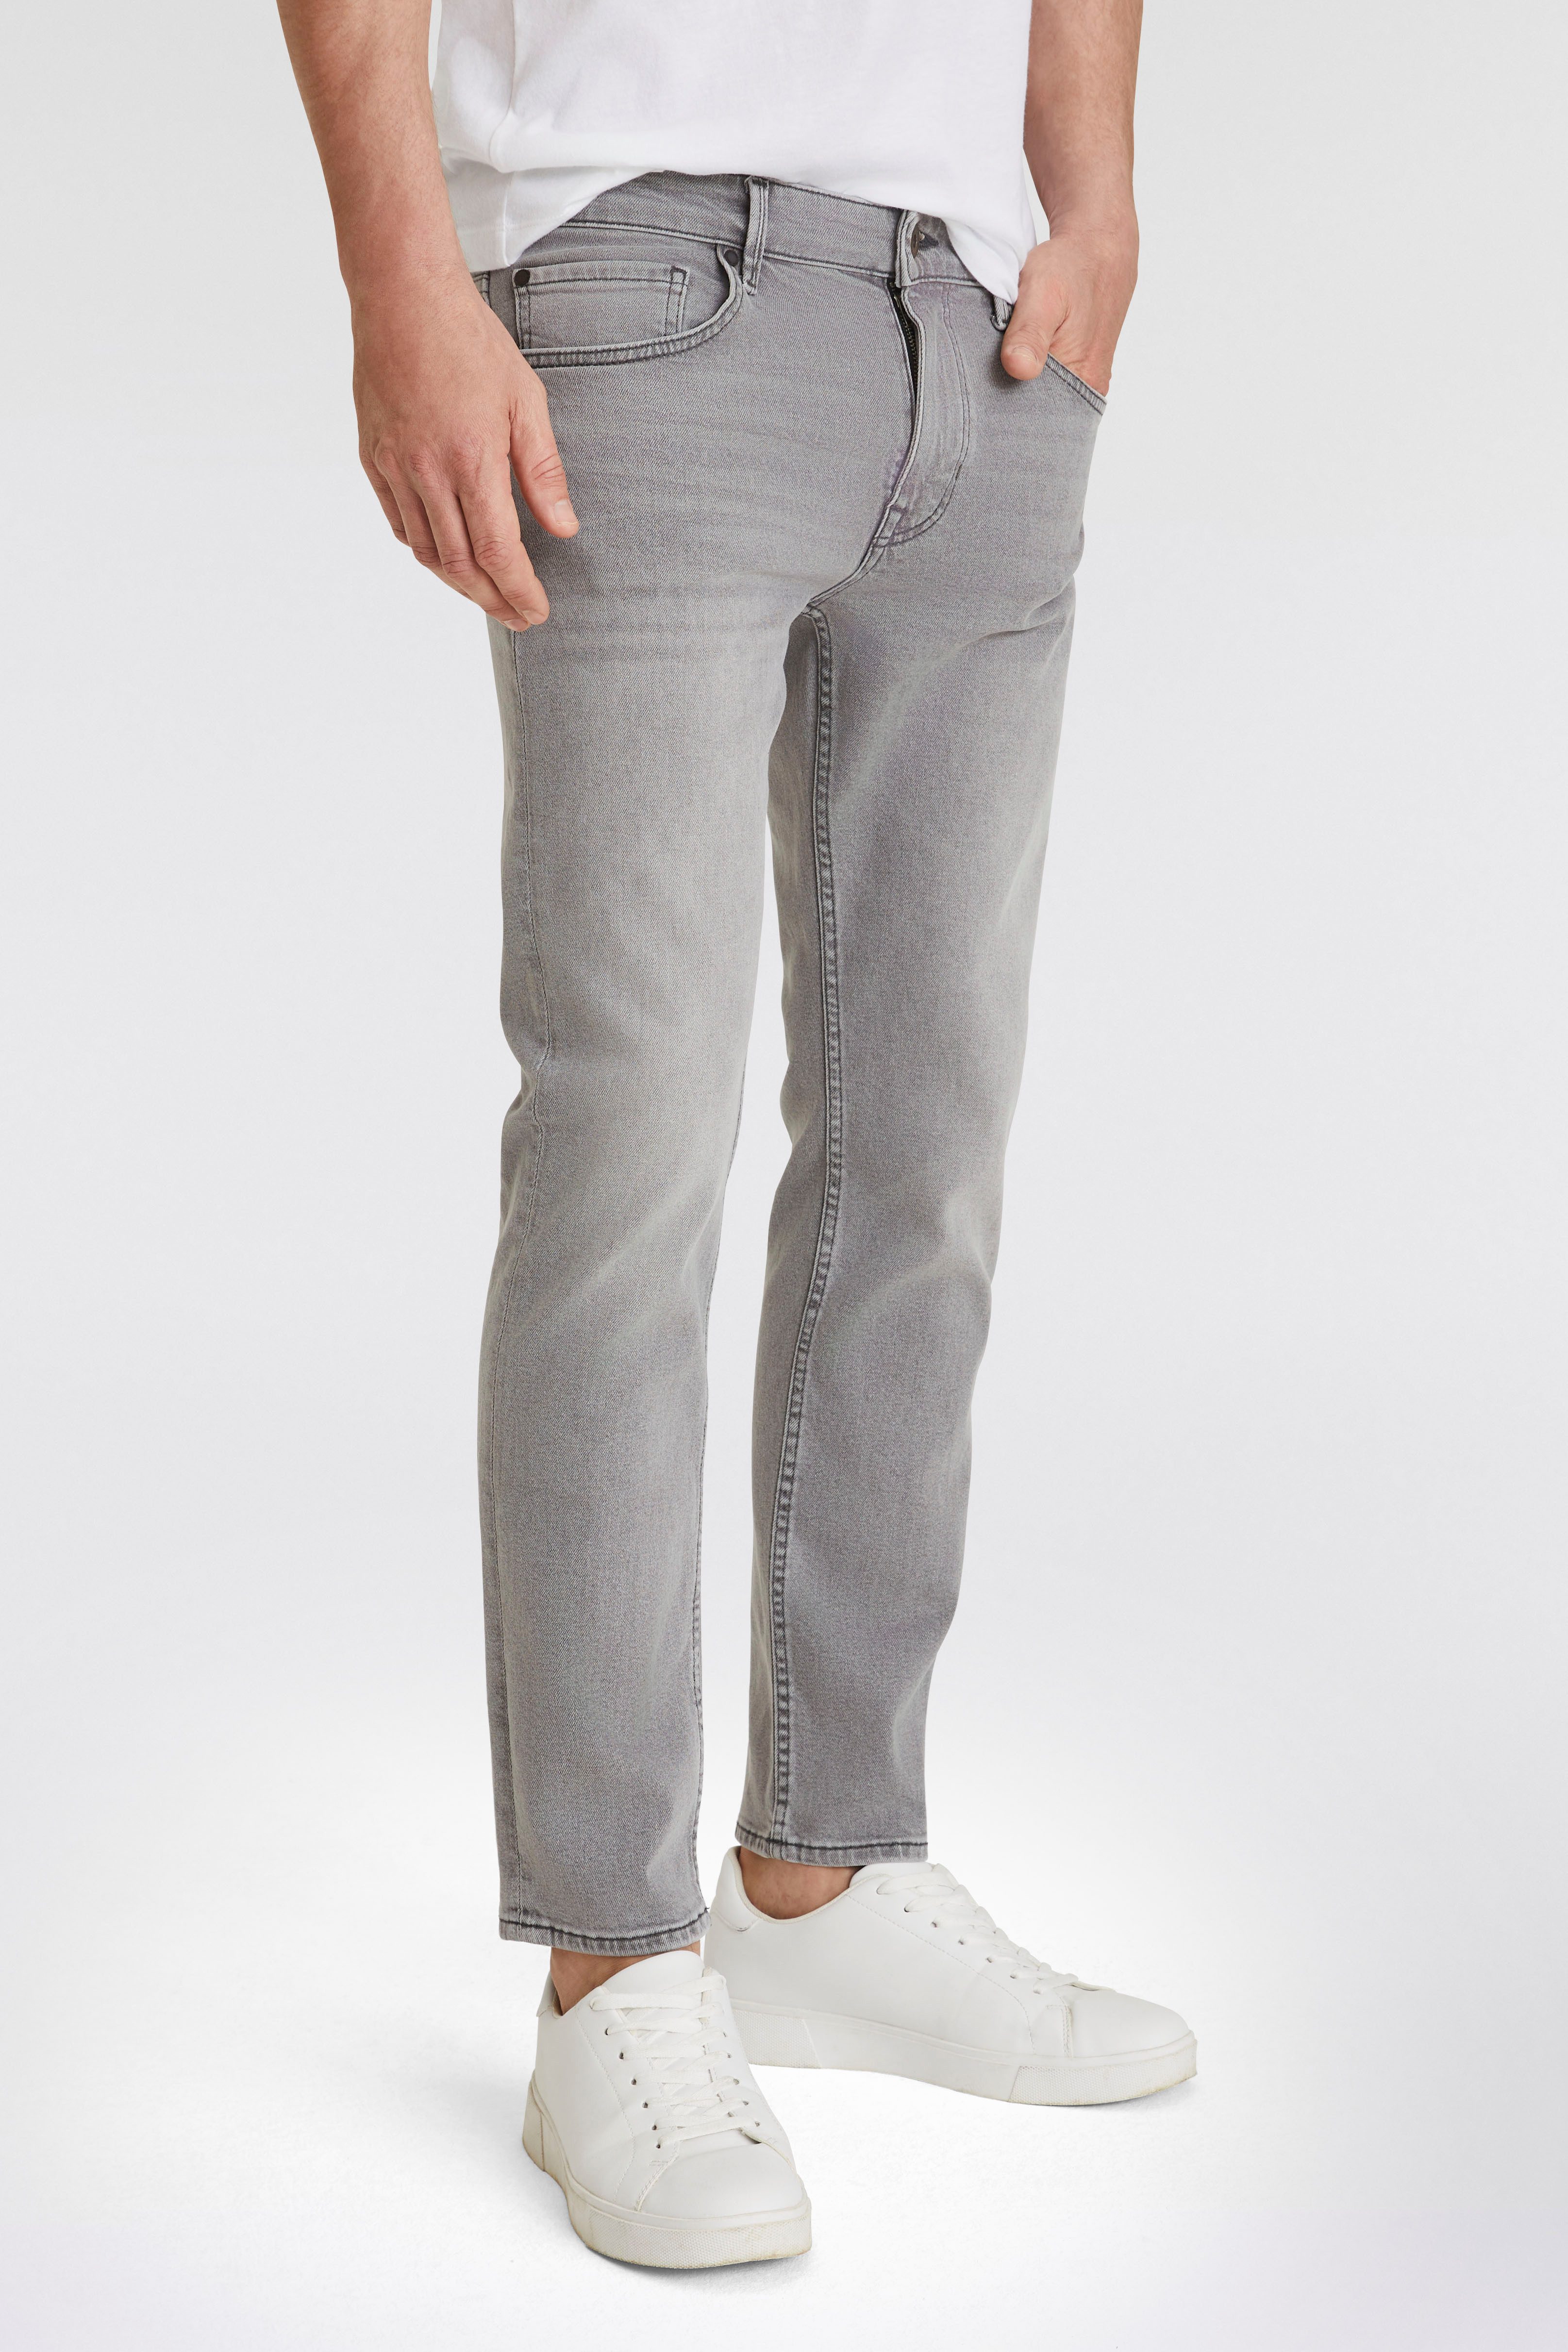 Marc O'Polo 5-pocket jeans SJÖBO shaped